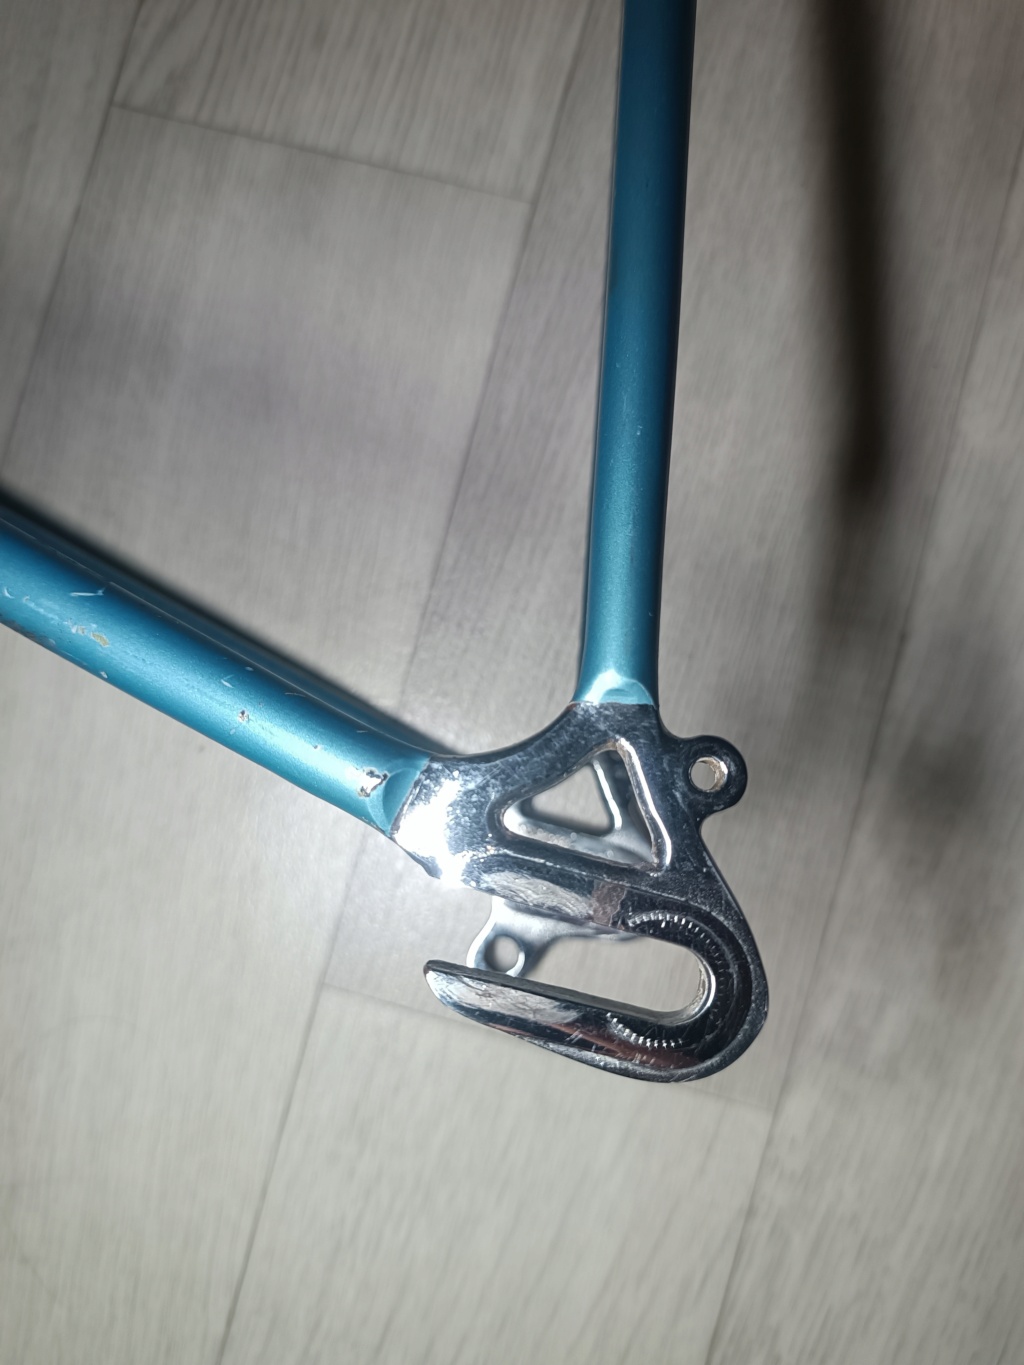 Vélo artisanal bleu en Columbus monté en campa nuovo / super record (restauration terminée) Img_2547